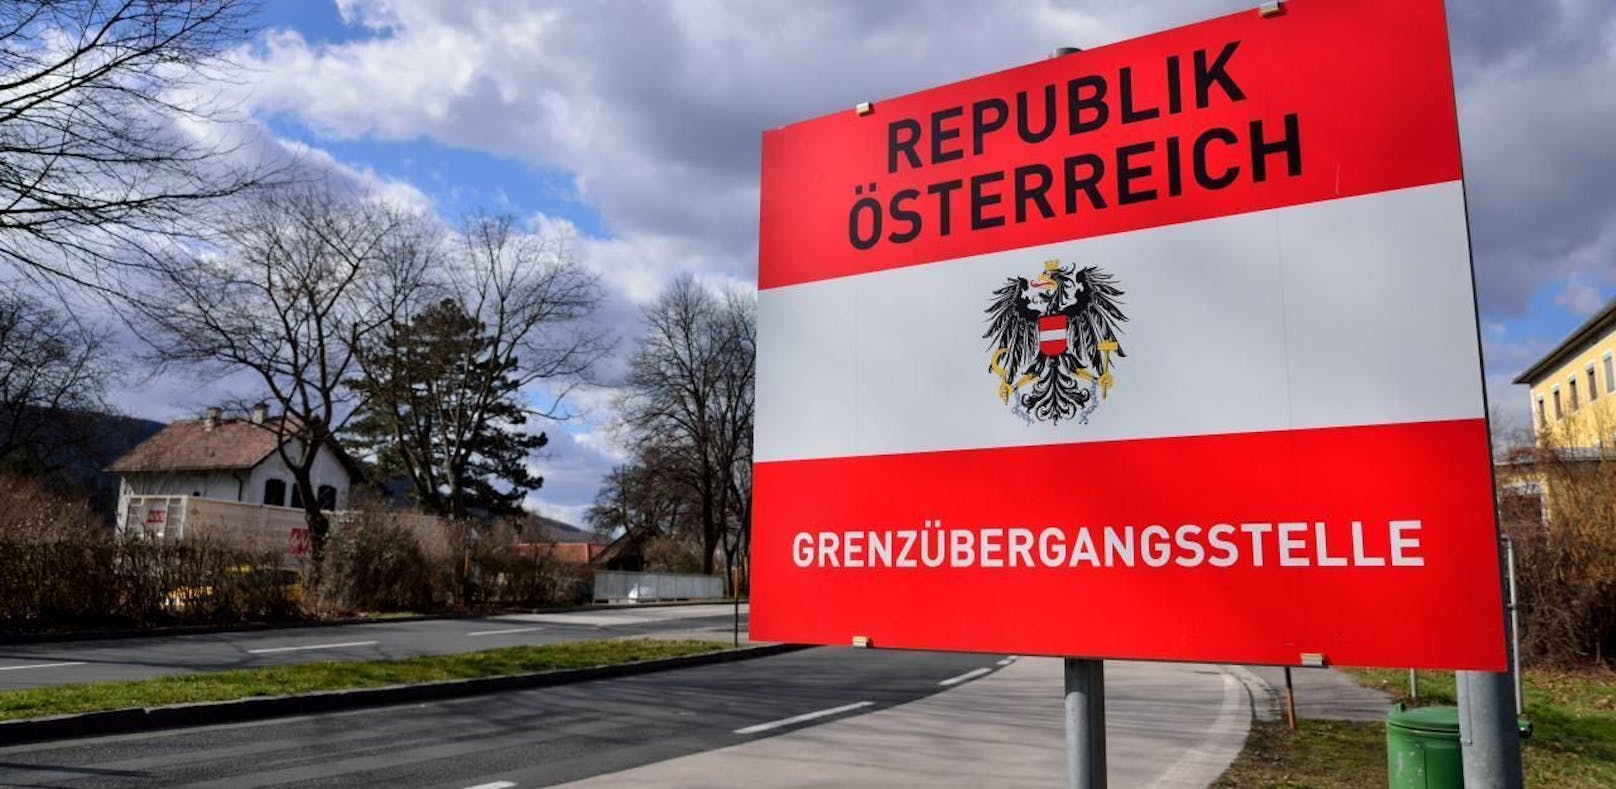 Grenzübergangsstelle der Republik Österreich.